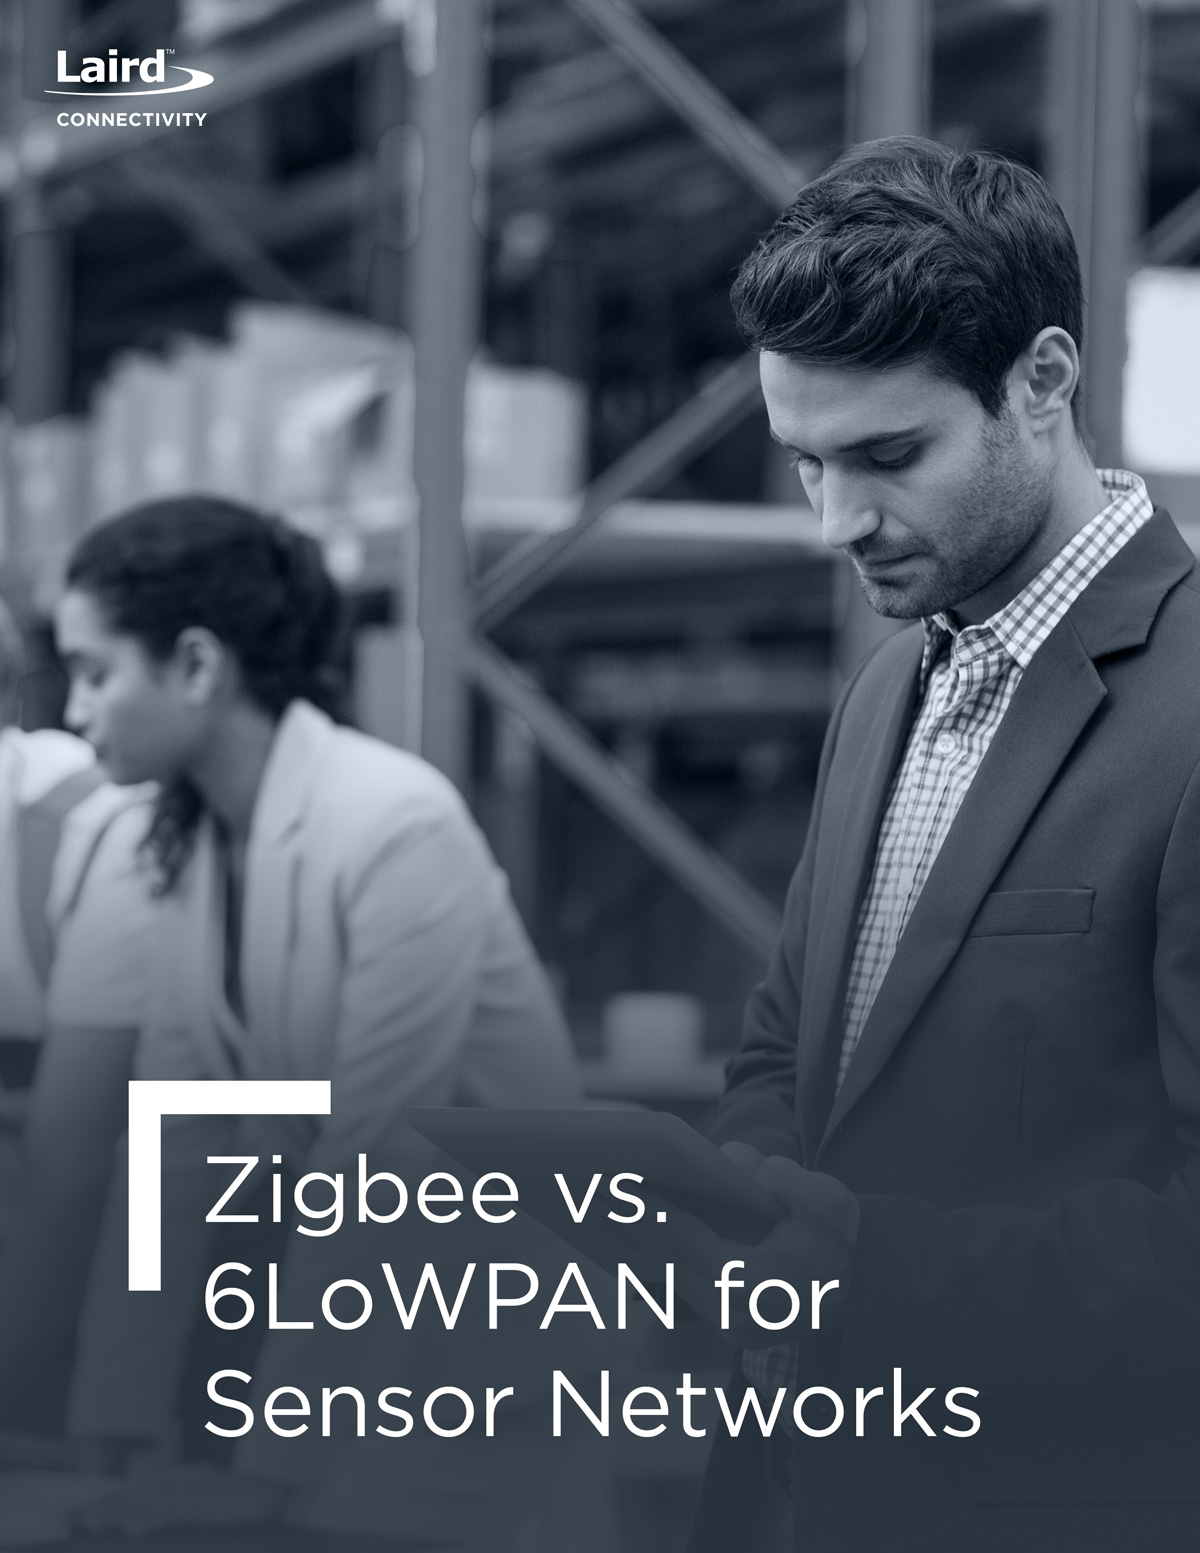 Zigbee vs. 6LoWPAN for sensor networks